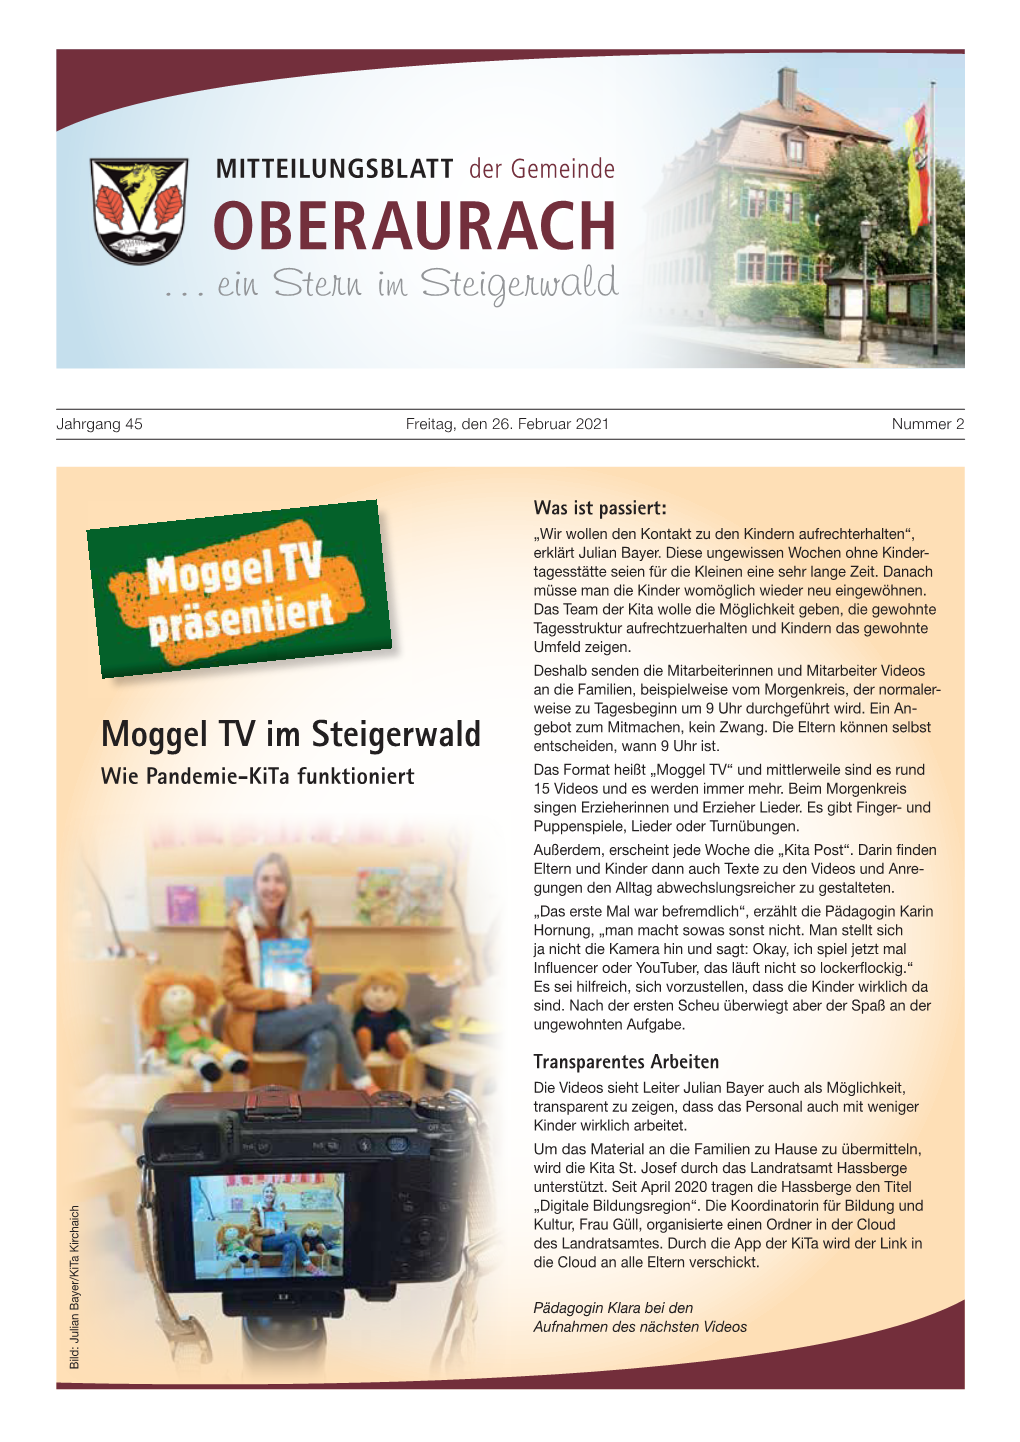 Moggel TV Im Steigerwald Entscheiden, Wann 9 Uhr Ist